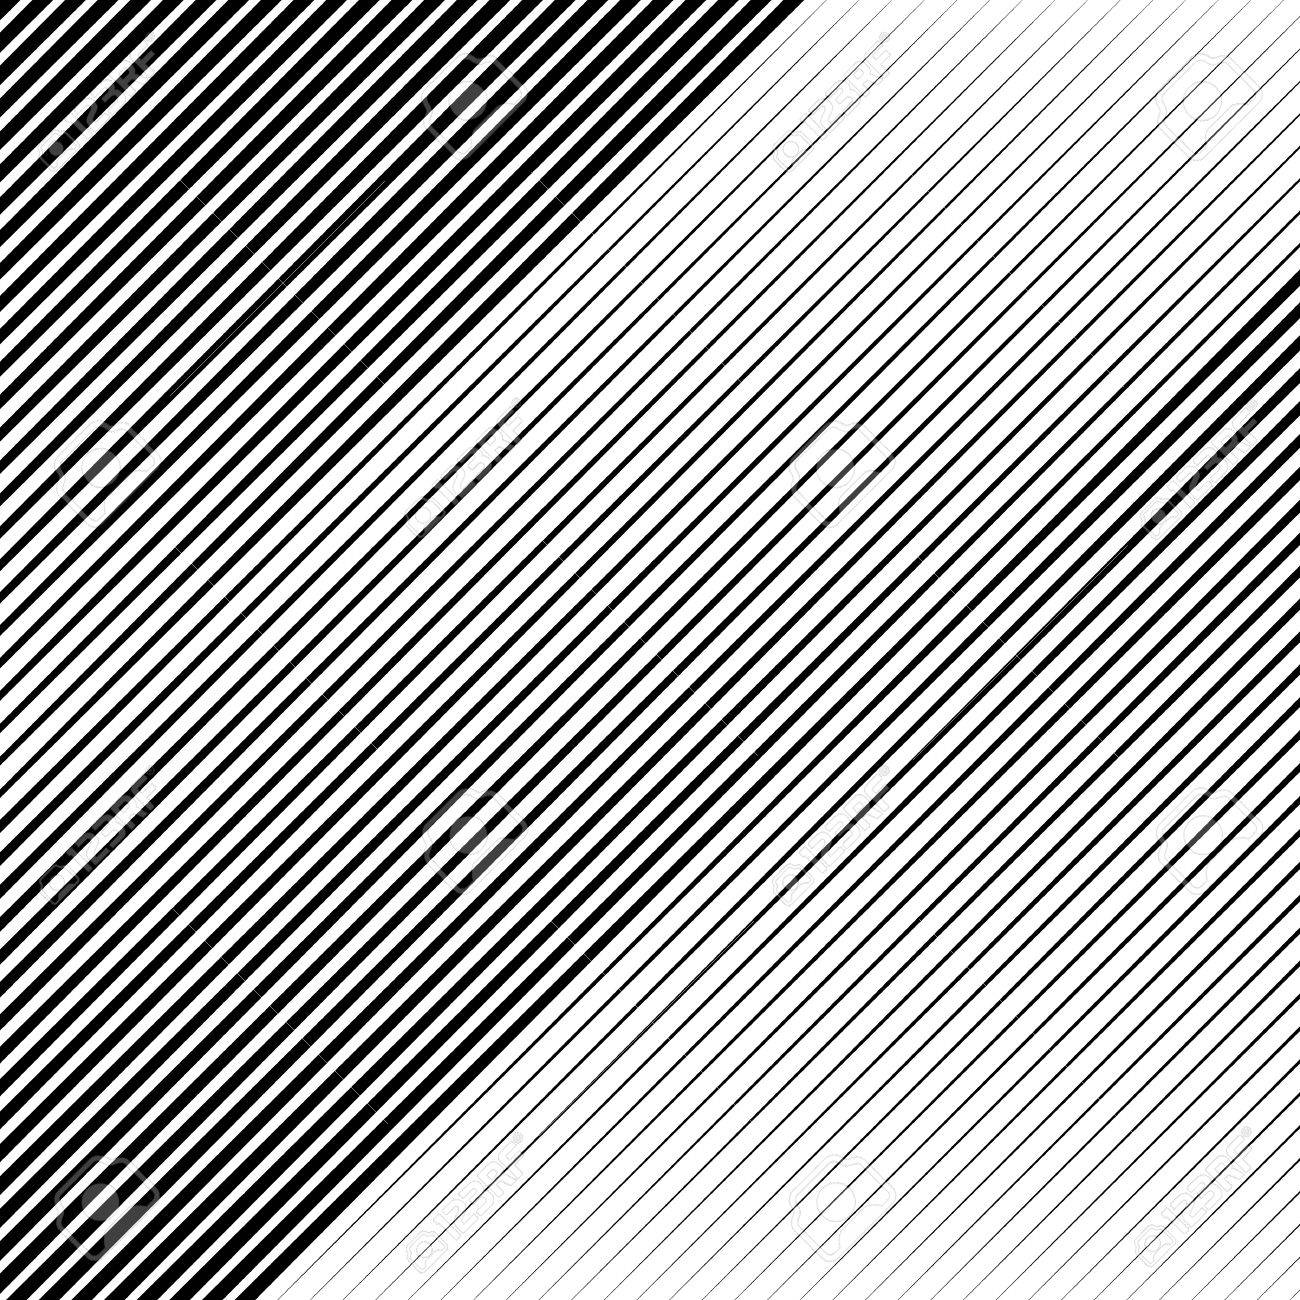 Oblique Diagonal Lines Edgy Pattern Monochrome Background